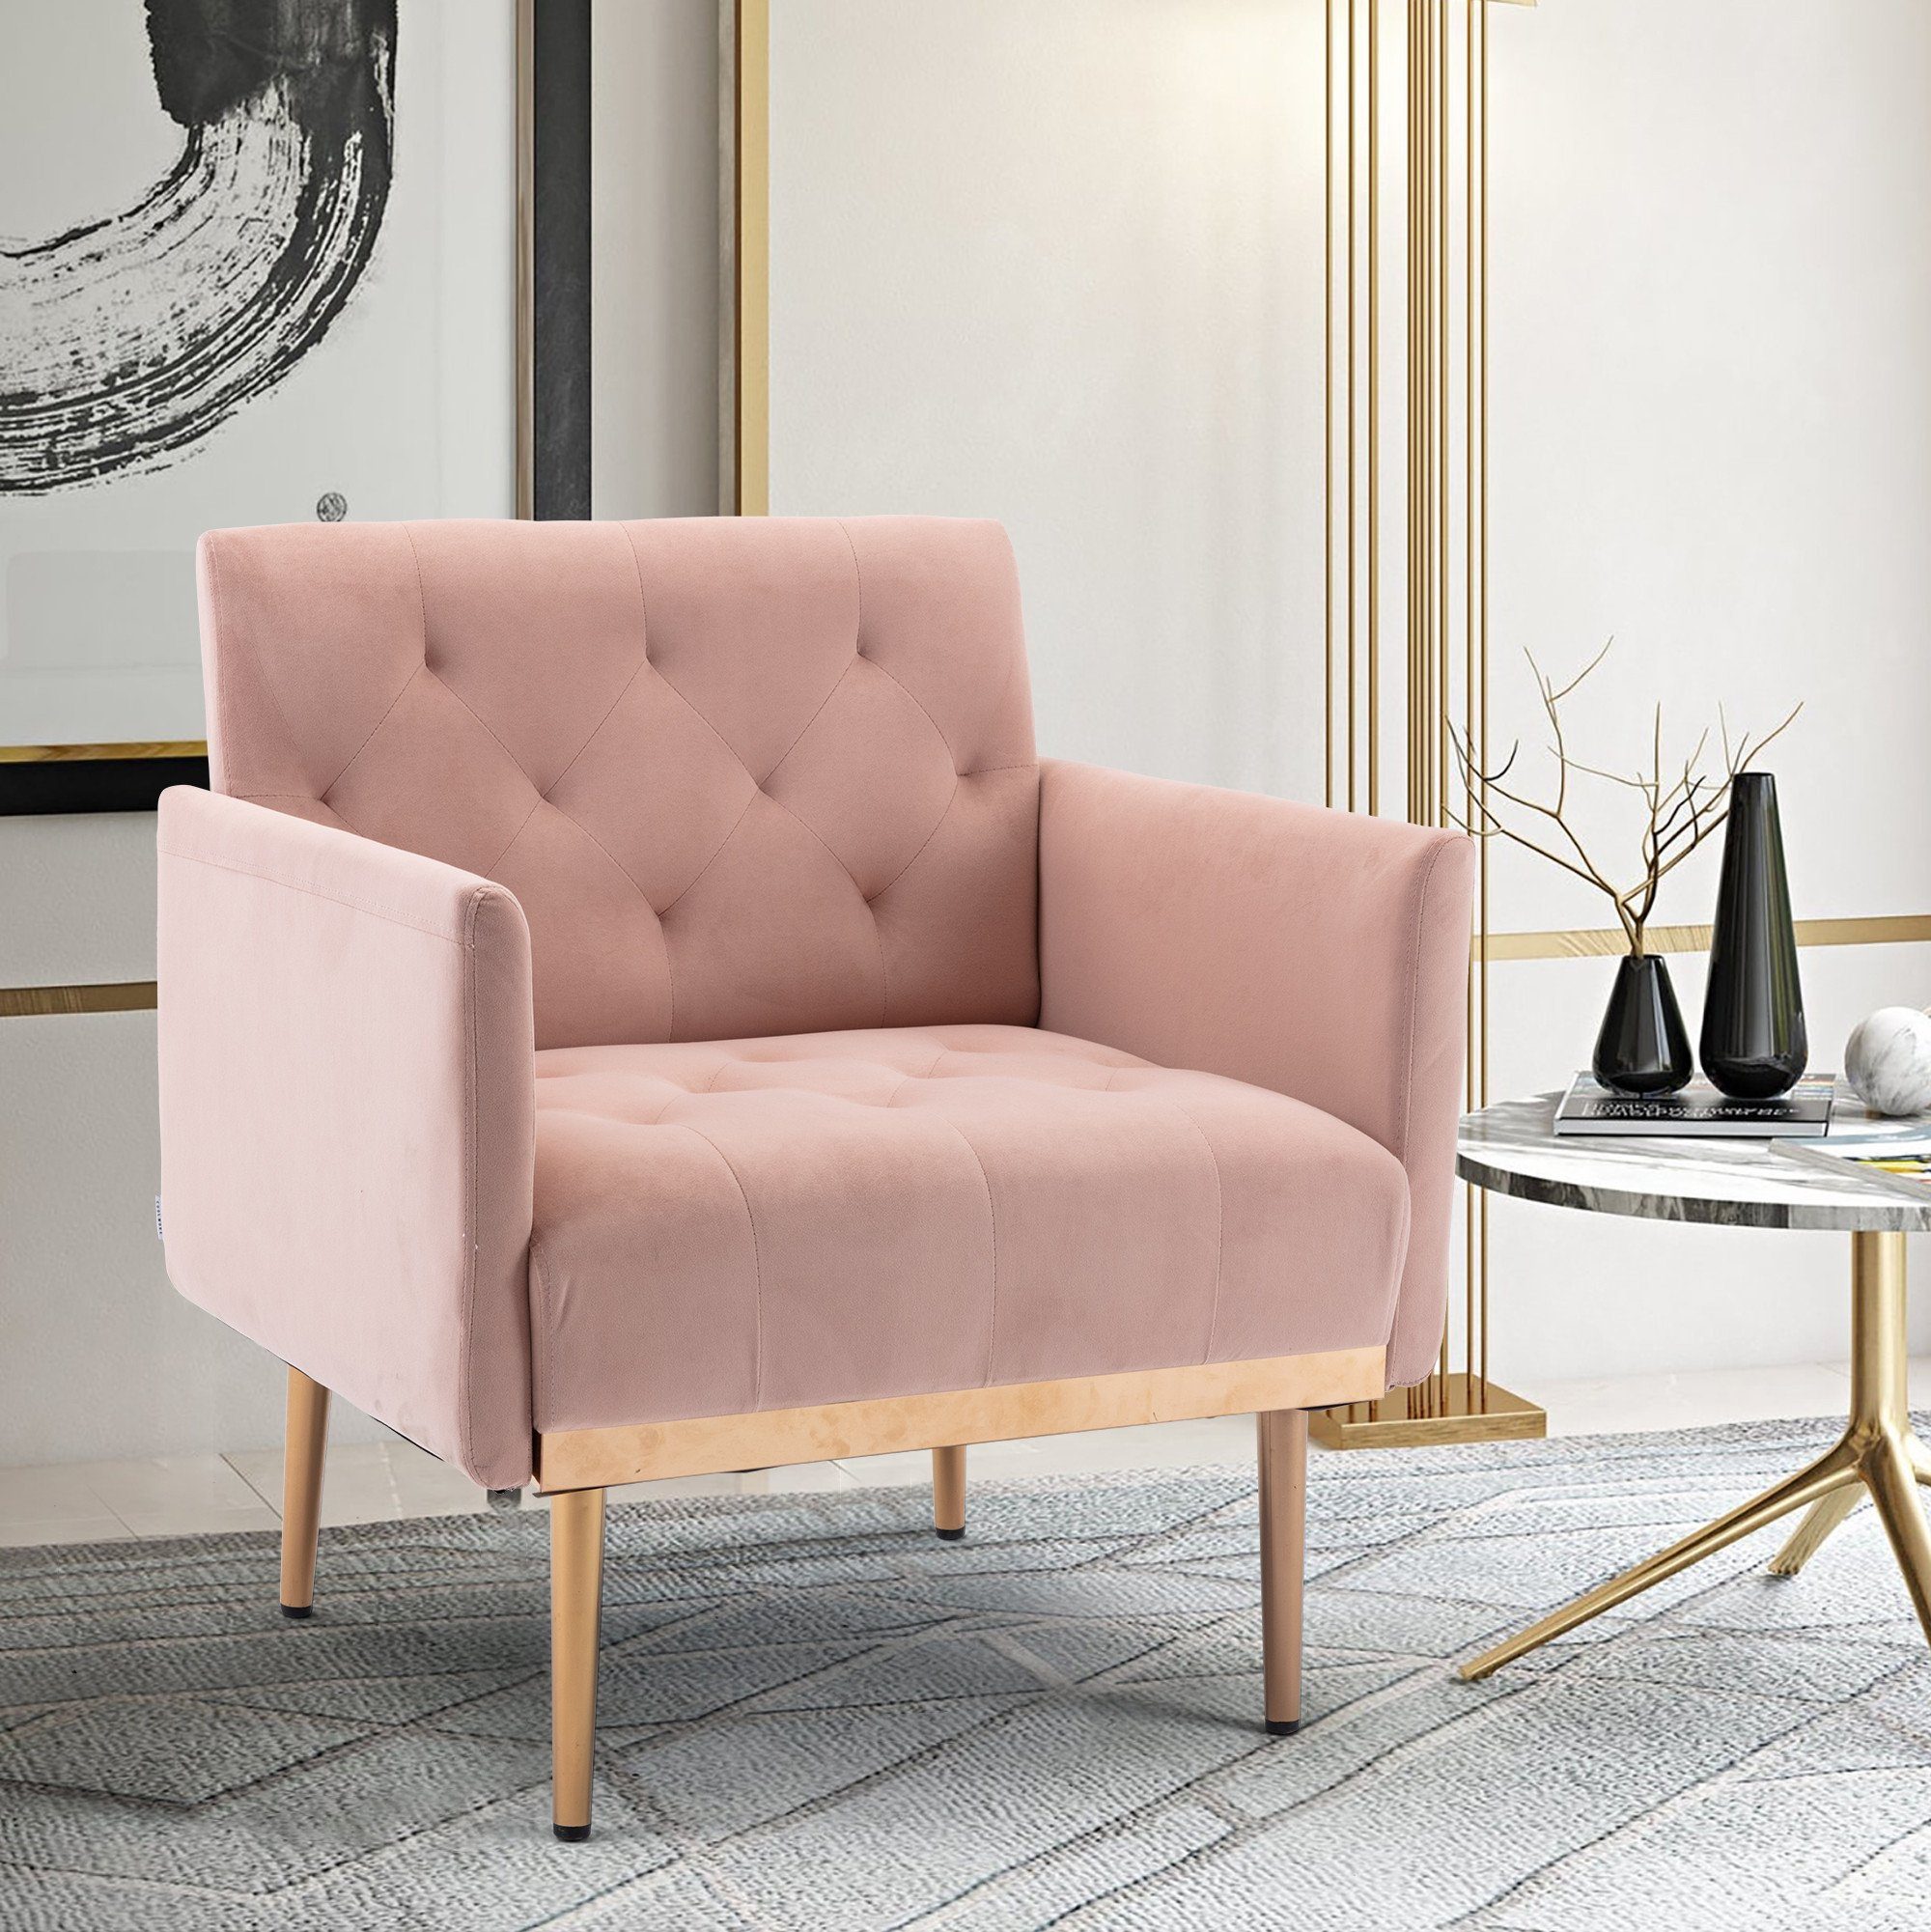 OKWISH Esszimmerstuhl Vierbeiniger Stuhl, Akzentstuhl, Freizeitsessel mit roségoldenen Füßen rosa